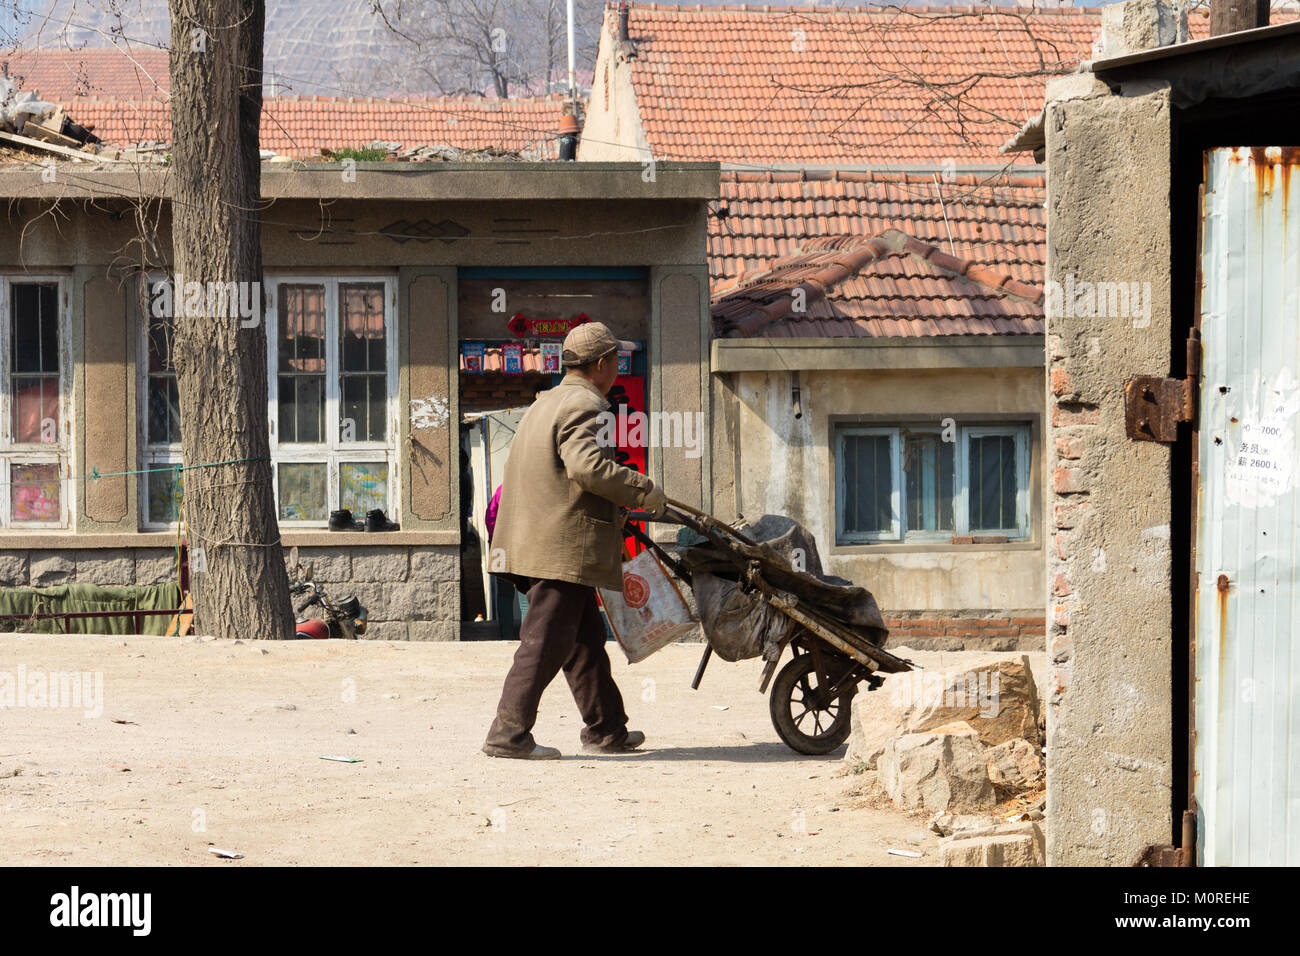 Marzo 2014 - Qingdao, Cina - un uomo trascinando un carrello nel quartiere povero di Shandongtou Foto Stock